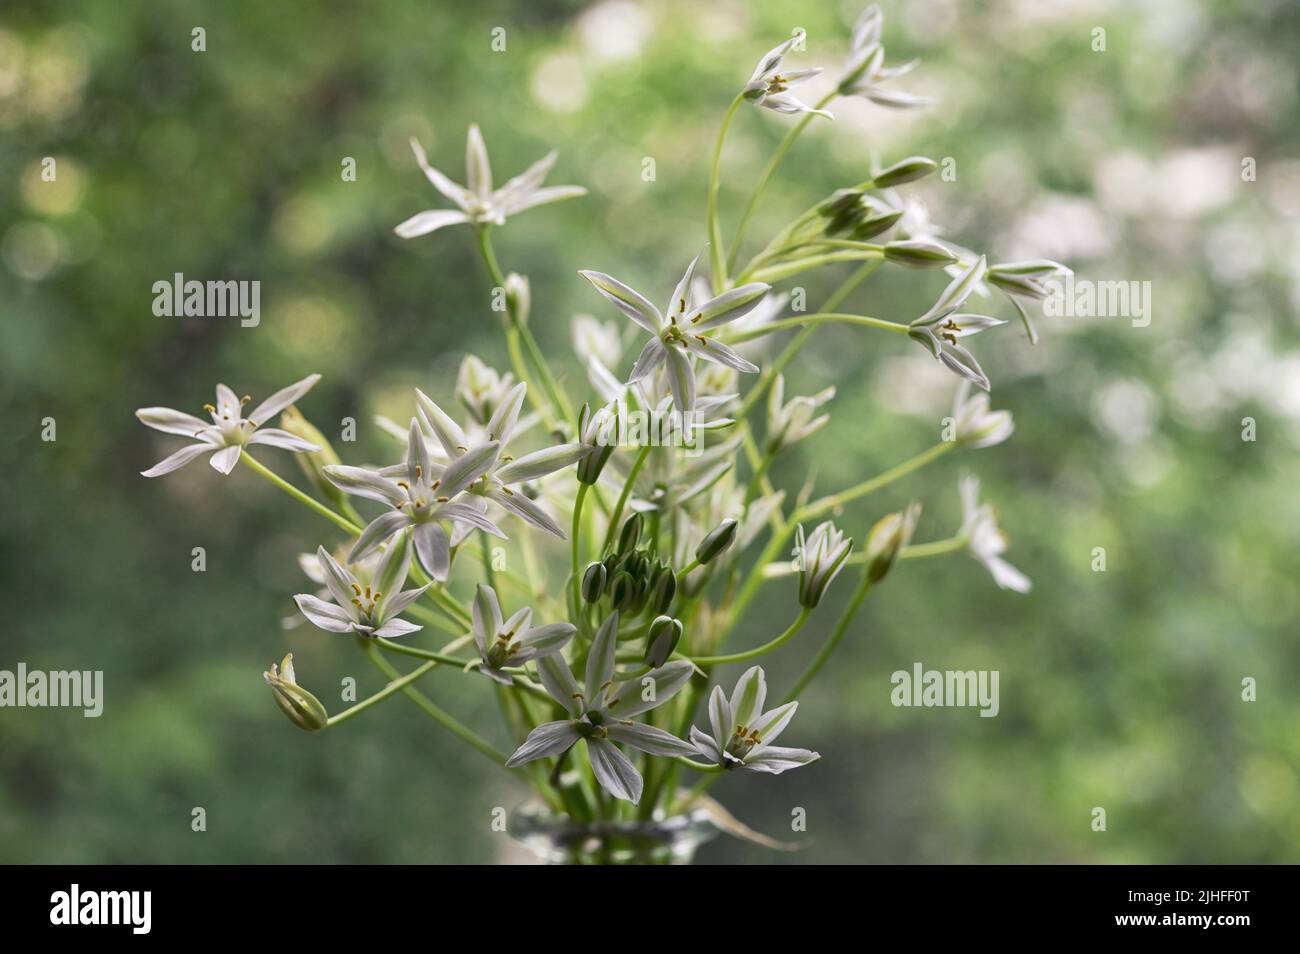 Closeup White flowers of Ornithogalum umbellatum or Star of Bethlehem Stock Photo